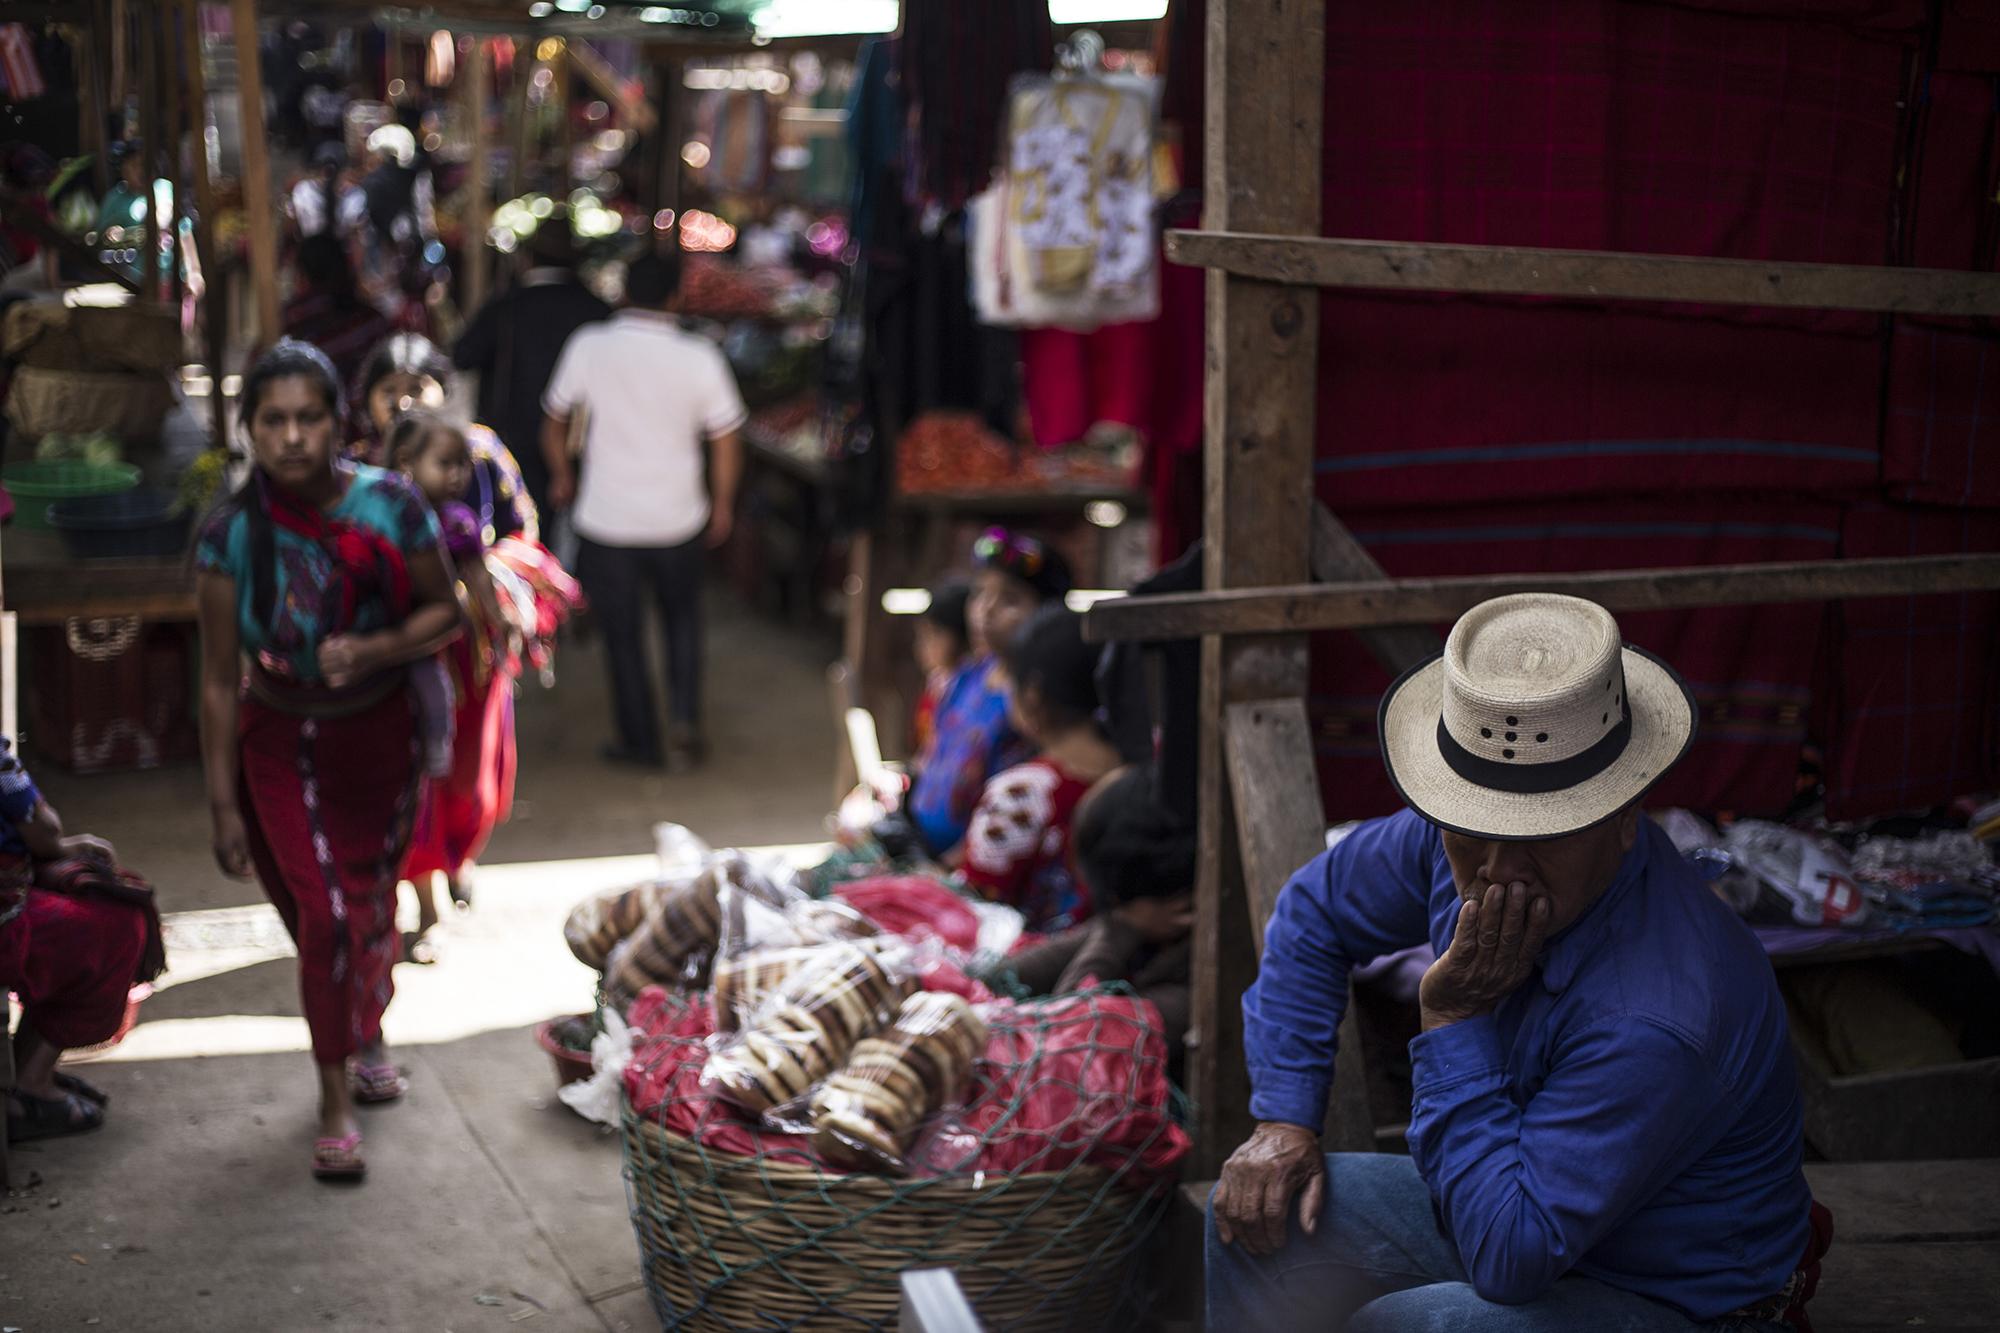 Hasta el año 2008, el 10 por ciento de la población de Chajul había migrado hacia Cobán para buscar empleo en fincas de café; o hacia la zona sur de Guatemala, para trabajar en las fincas de caña de azúcar. Dentro de ese 10 % están los que también tomaron rumbo hacia Estados Unidos. Muchos de los que quedan, como en la imagen, se dedican a vender artesanías que ellos mismos elaboran. 